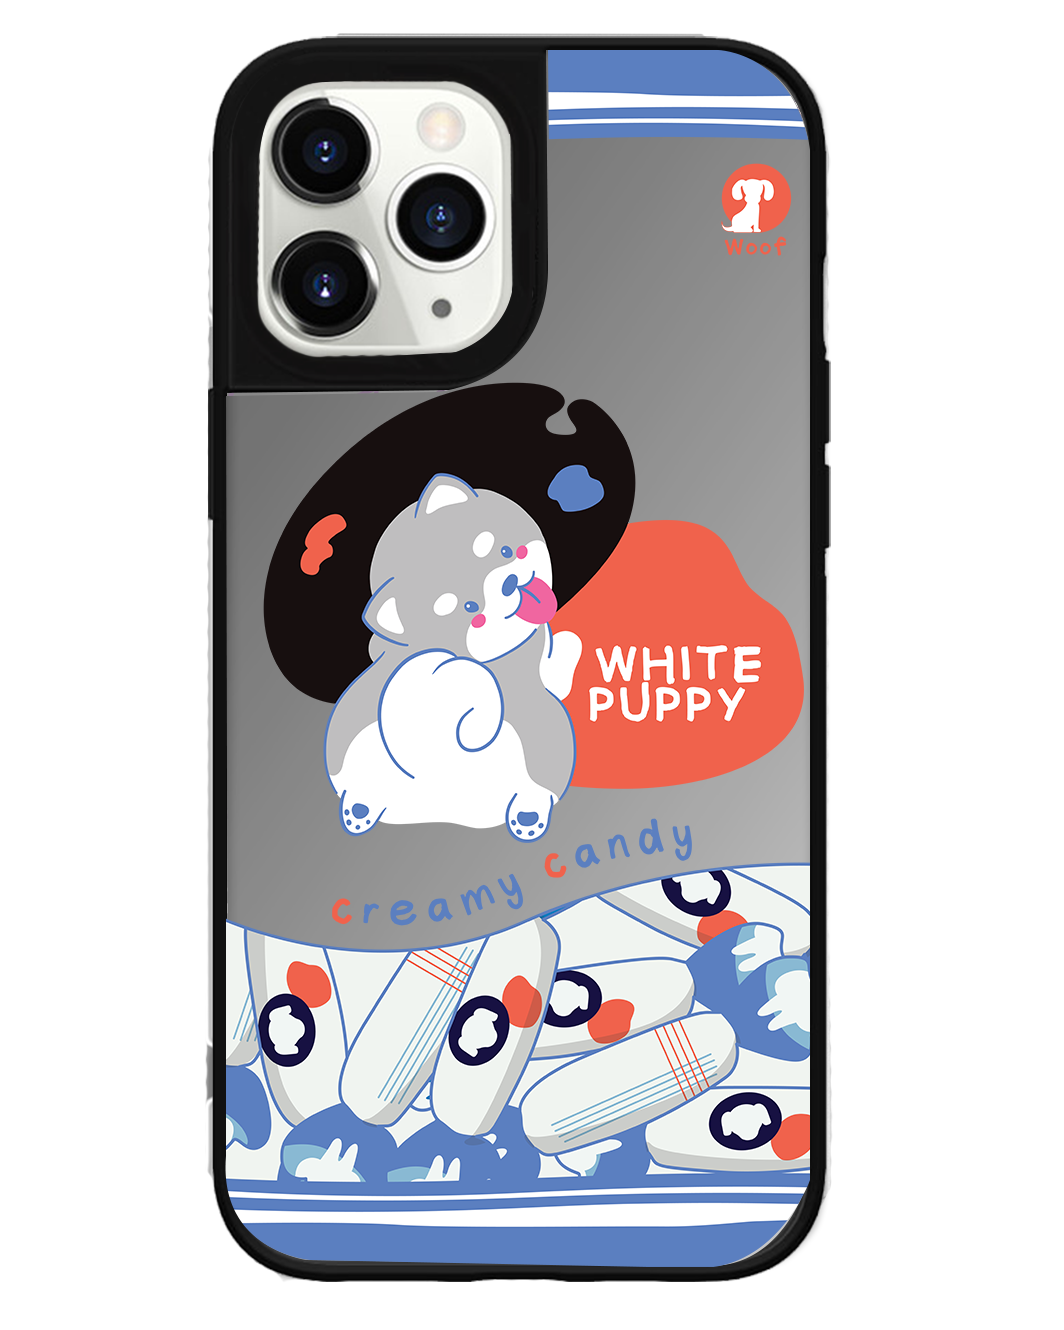 iPhone Mirror Grip Case - White Puppy